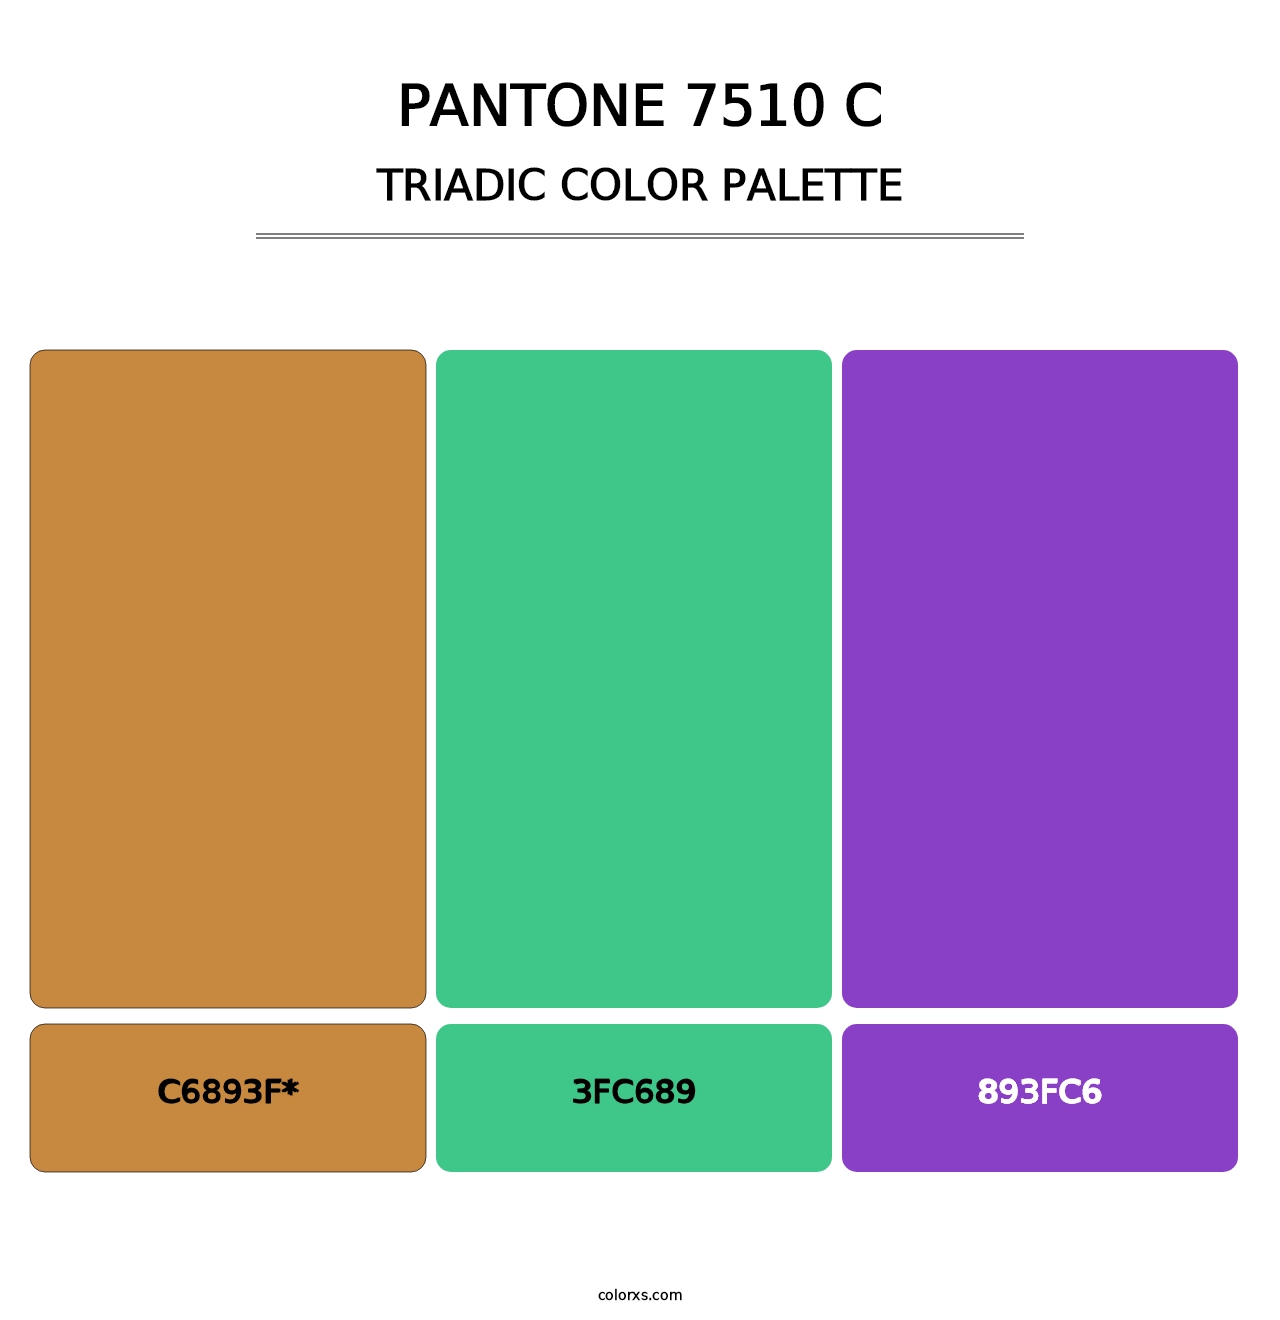 PANTONE 7510 C - Triadic Color Palette